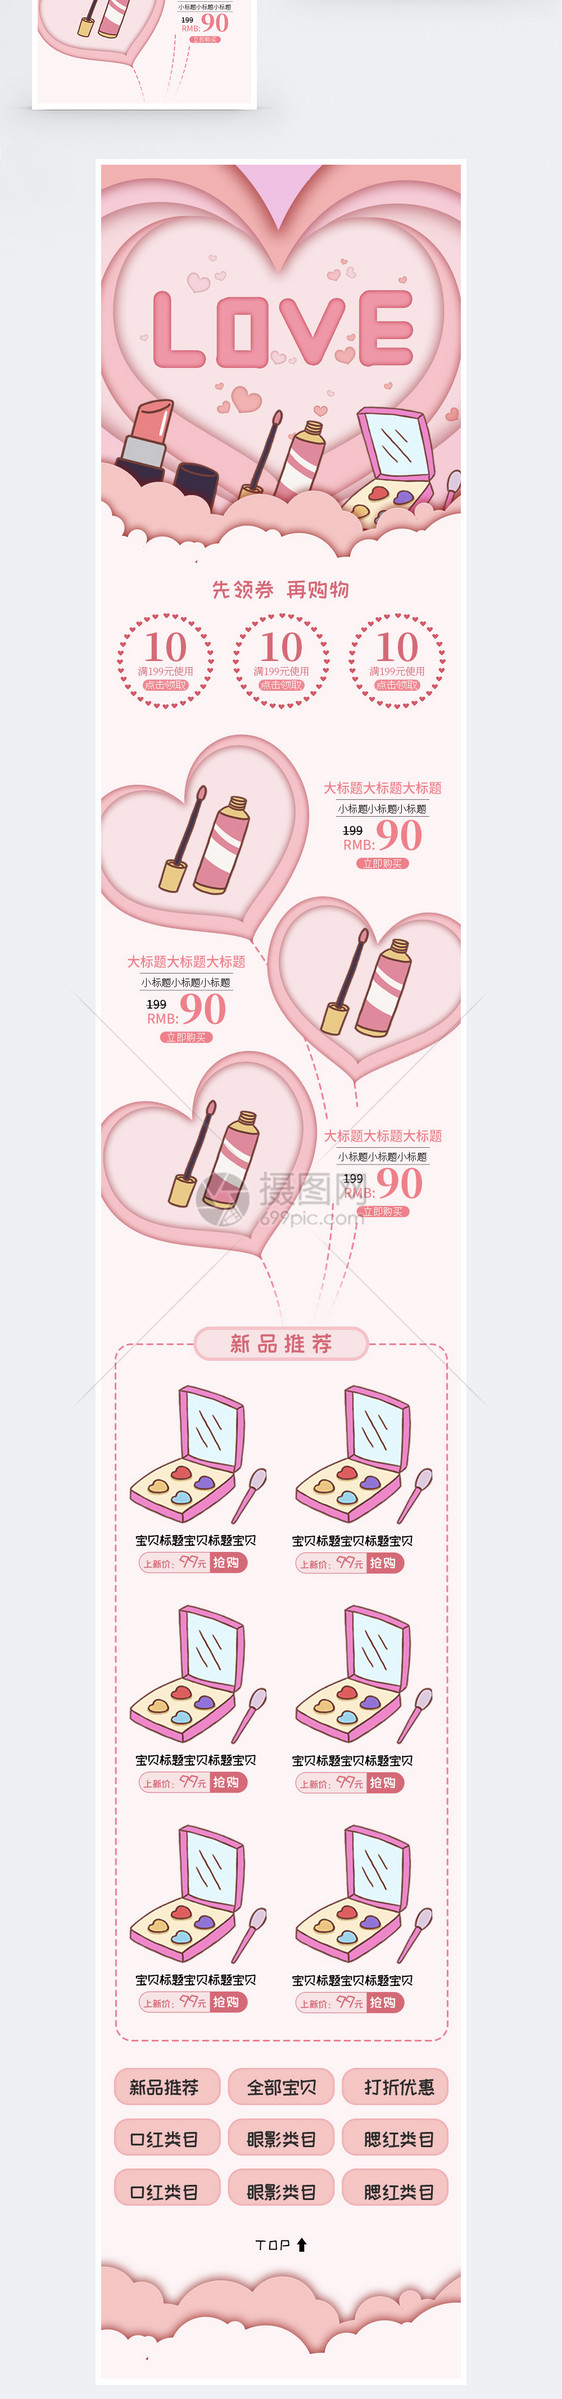 电商七夕美妆促销手机端模板图片